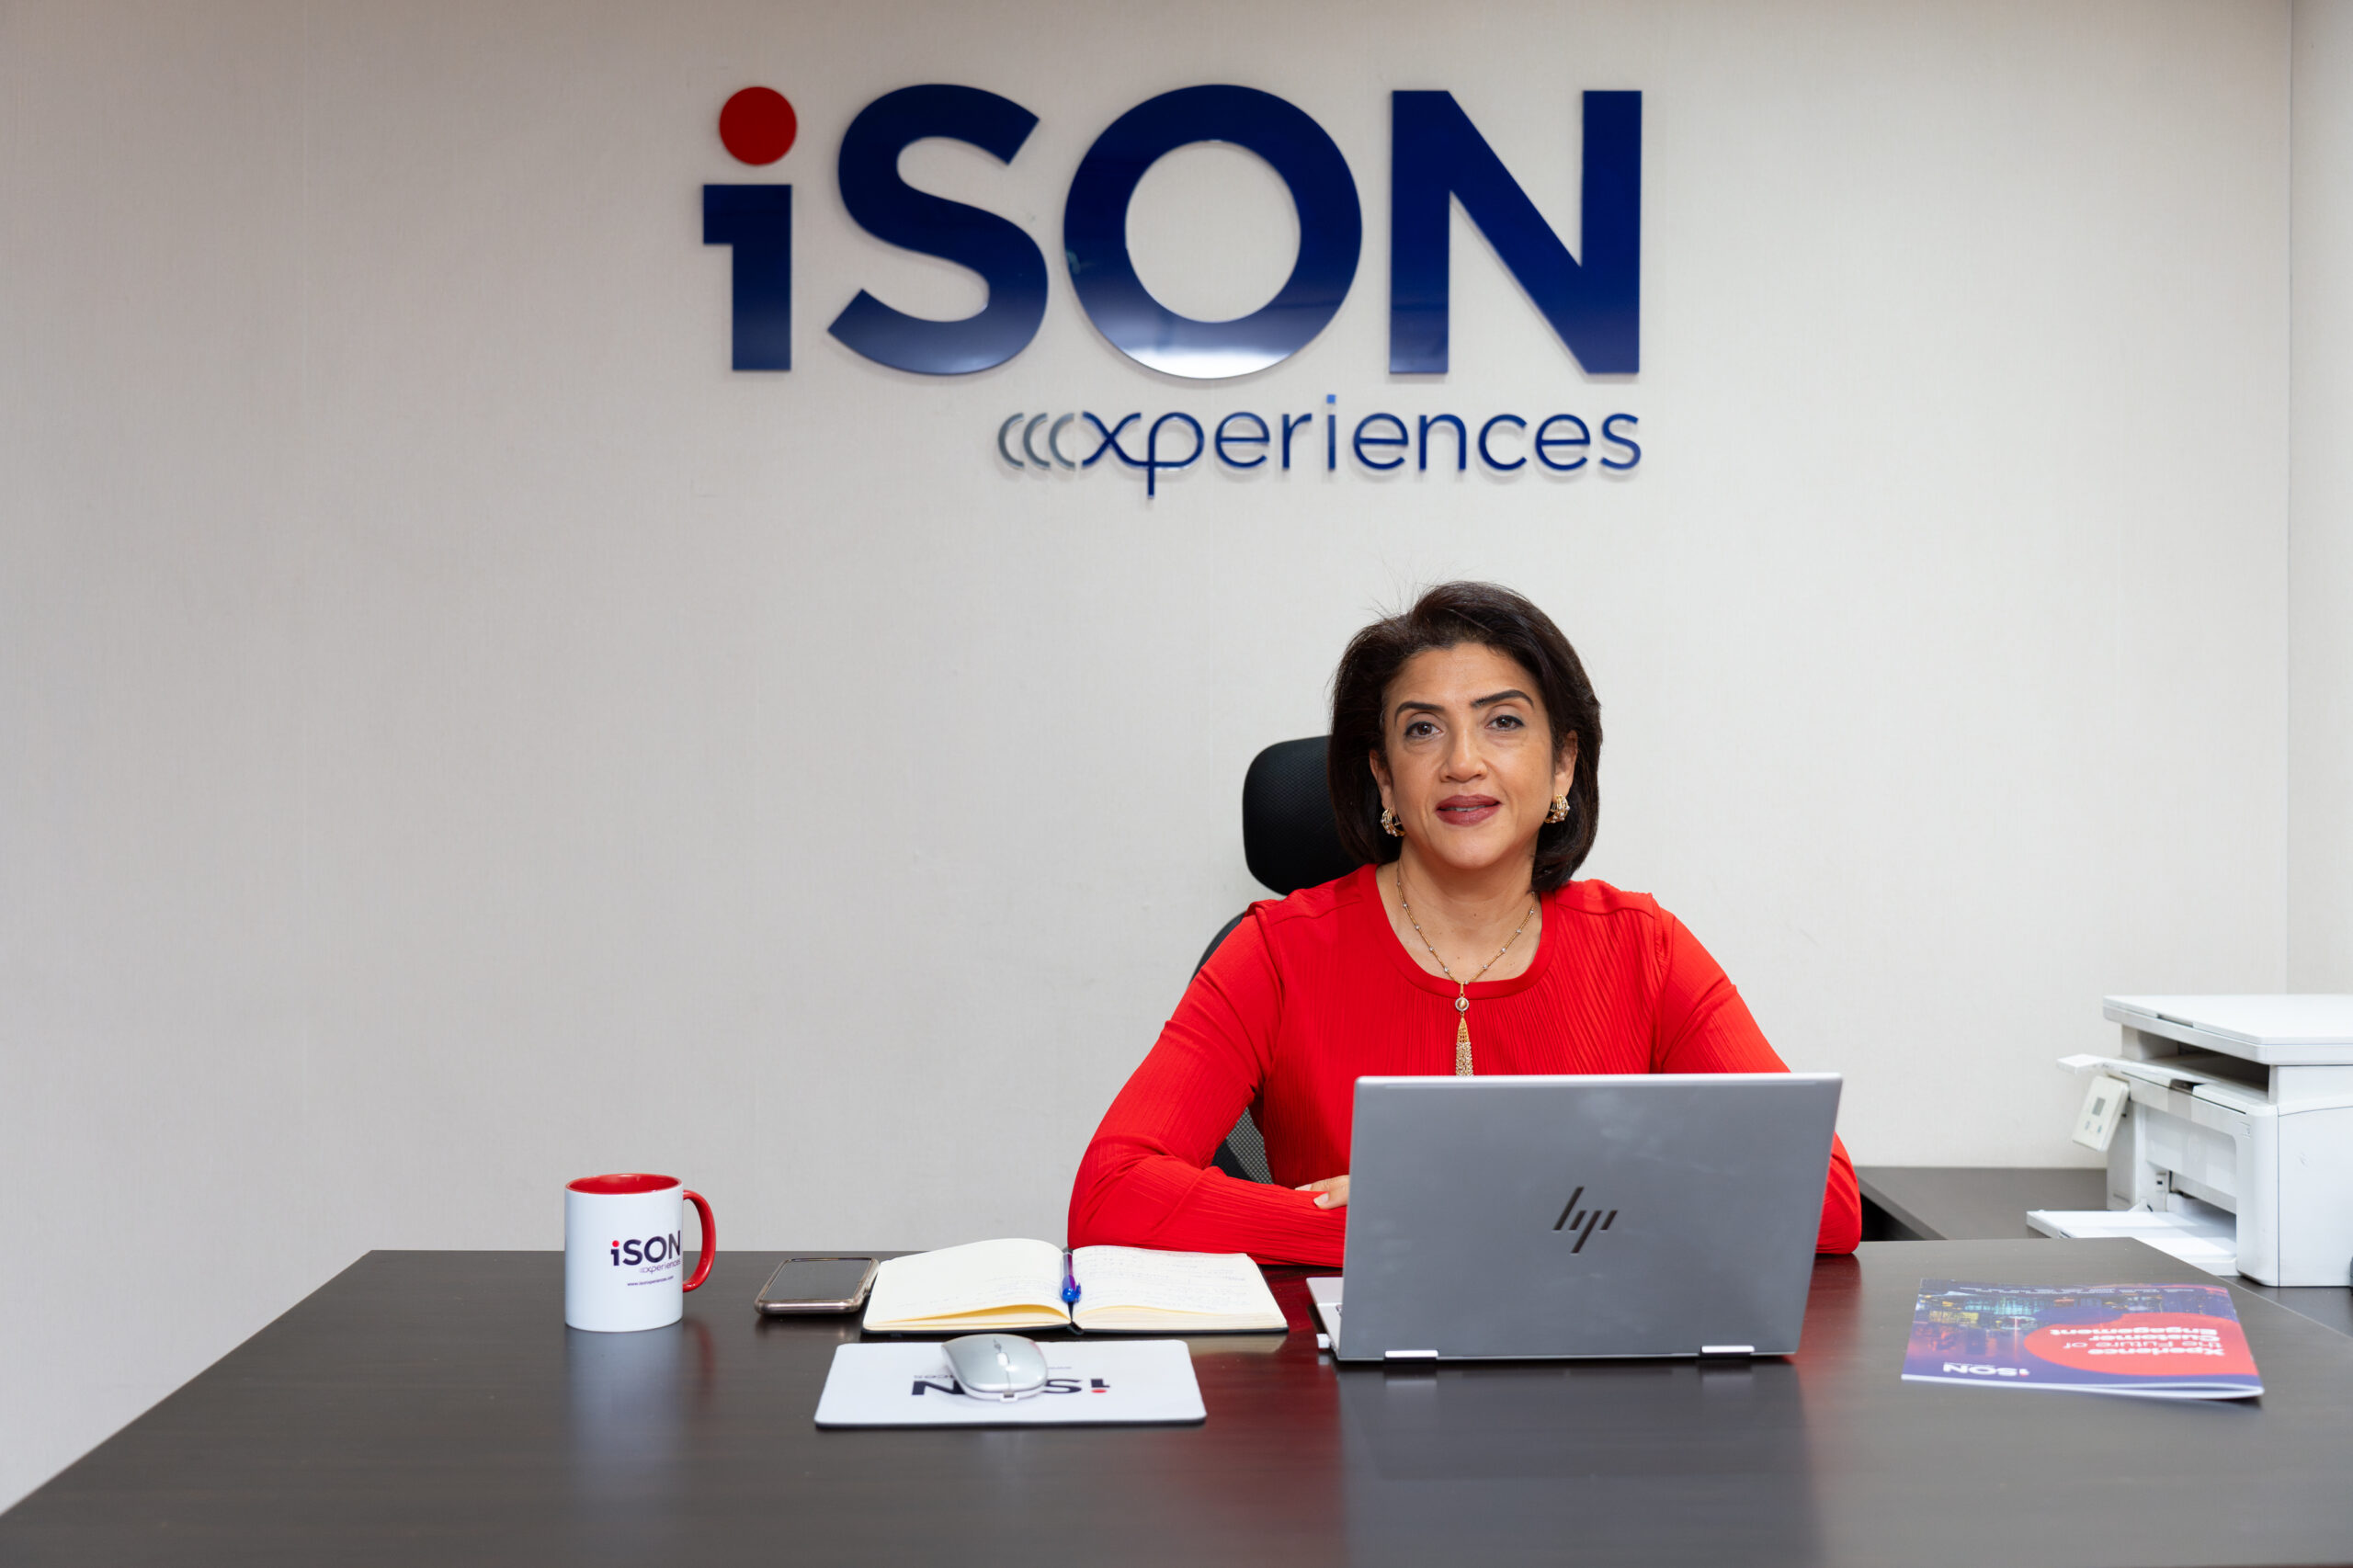 أماني ربيع، الرئيس التنفيذي للتطوير في شركة إيزون إكسبرينس iSON Xperiences  لخدمات التعهيد